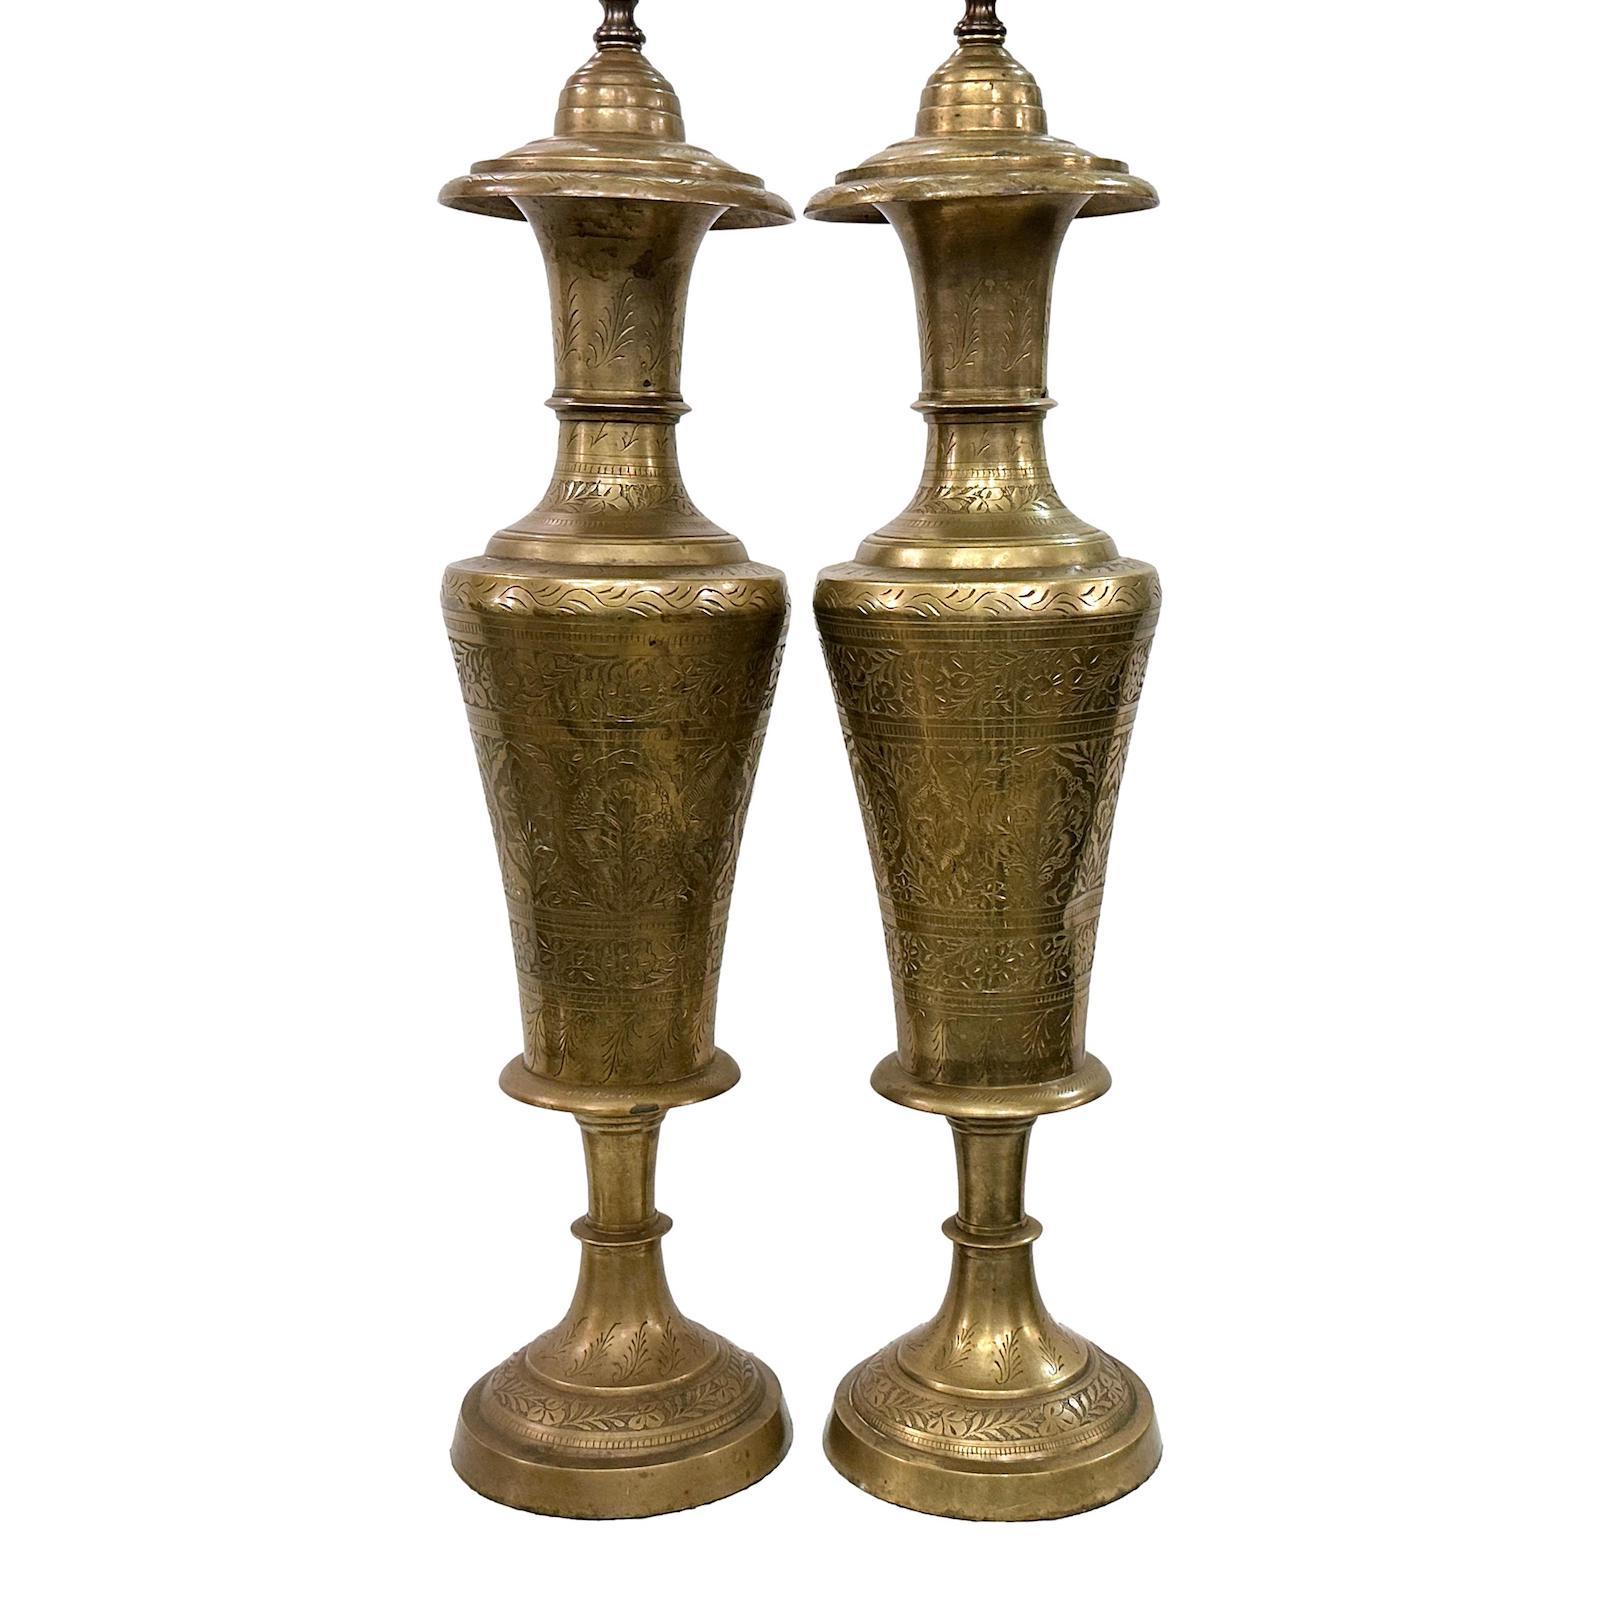 Zwei türkische Lampen aus geätztem Messing mit Blattwerkmotiv, CIRCA 1920er Jahre. Einer hat eine Delle an der Seite des Gehäuses.

Abmessungen:
Höhe des Körpers: 25